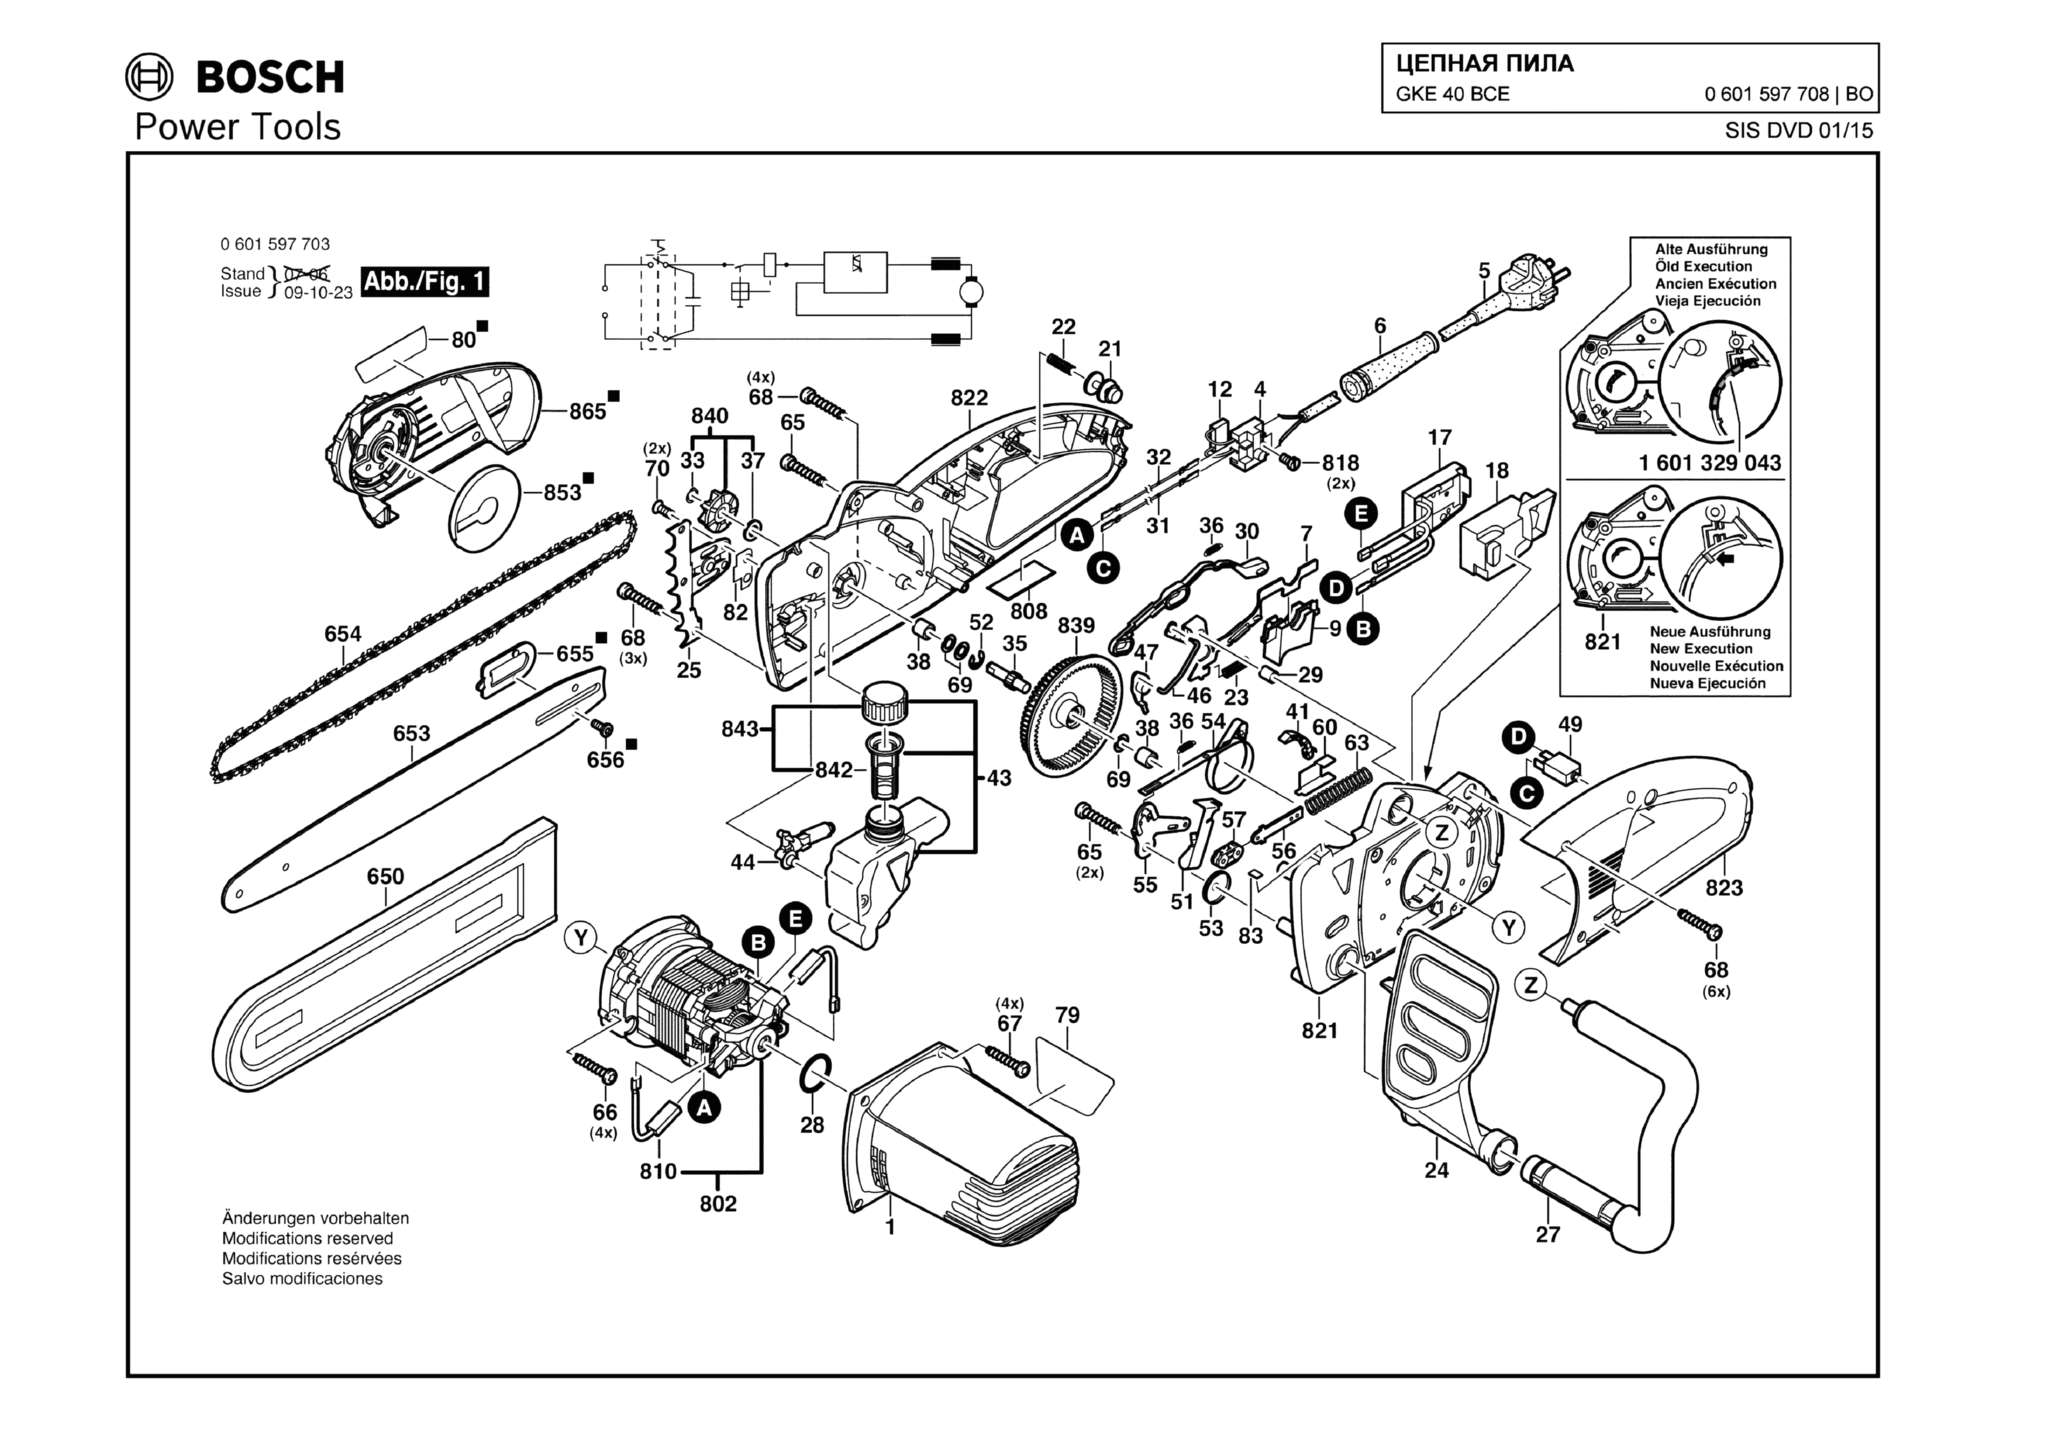 Запчасти, схема и деталировка Bosch GKE 40 BCE (ТИП 0601597708)